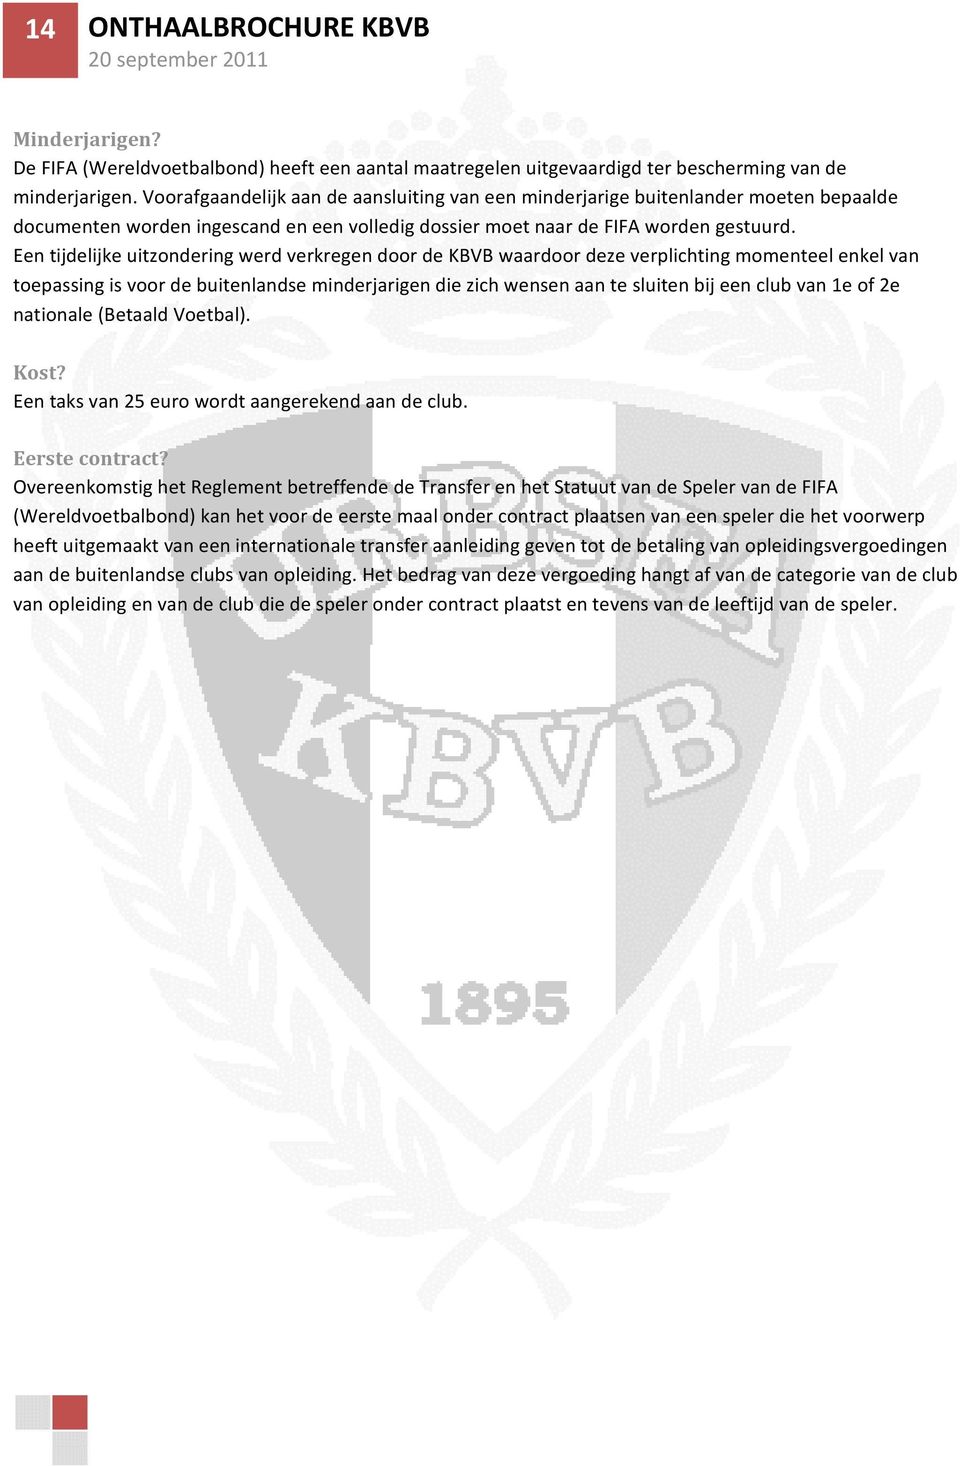 Een tijdelijke uitzondering werd verkregen door de KBVB waardoor deze verplichting momenteel enkel van toepassing is voor de buitenlandse minderjarigen die zich wensen aan te sluiten bij een club van